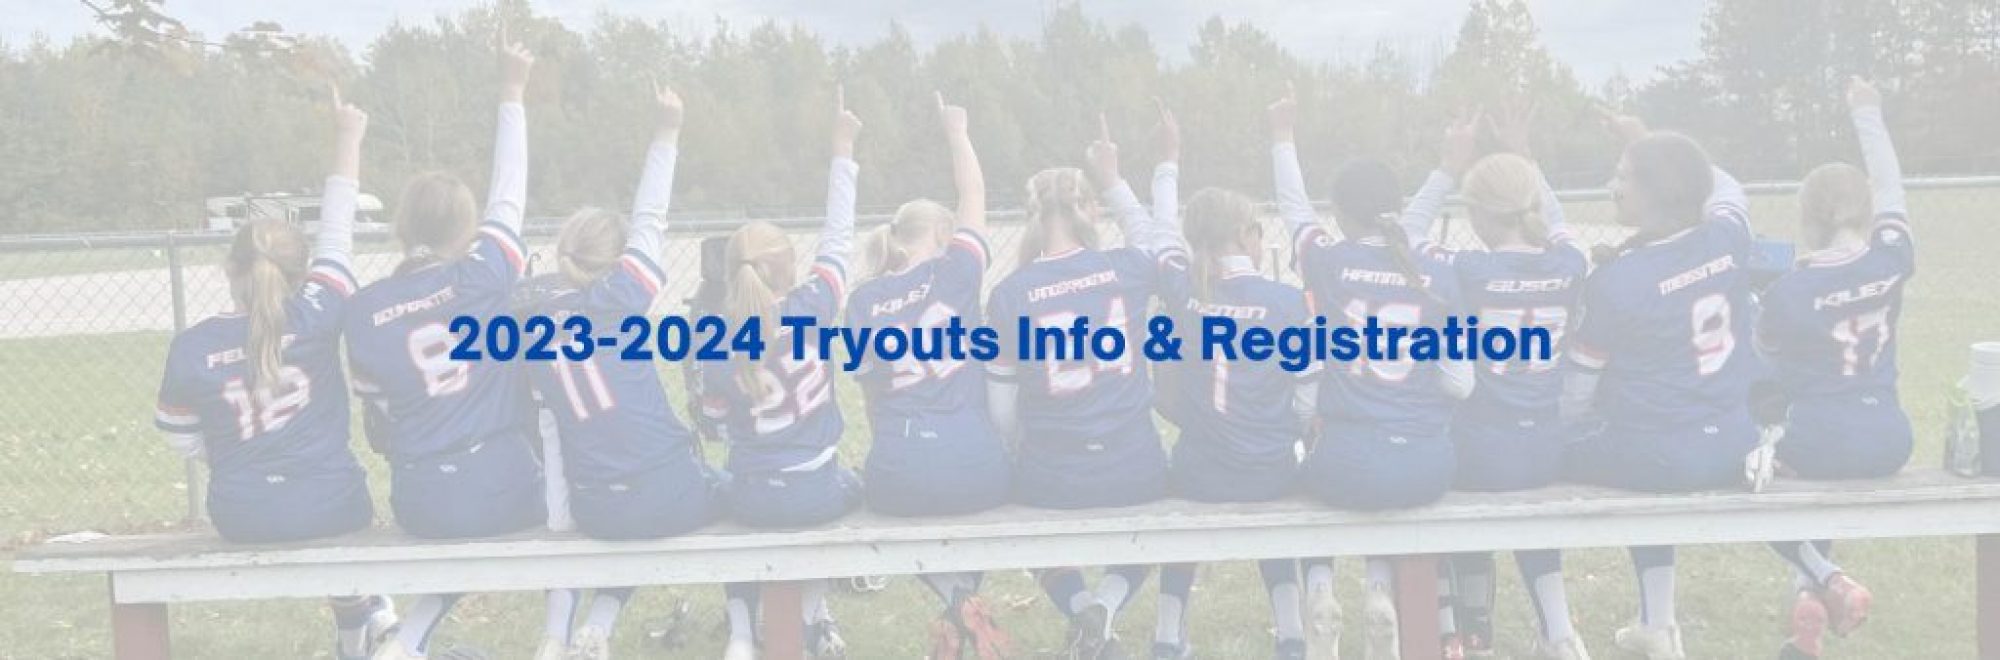 2023-2024 Tryouts Info & Registration